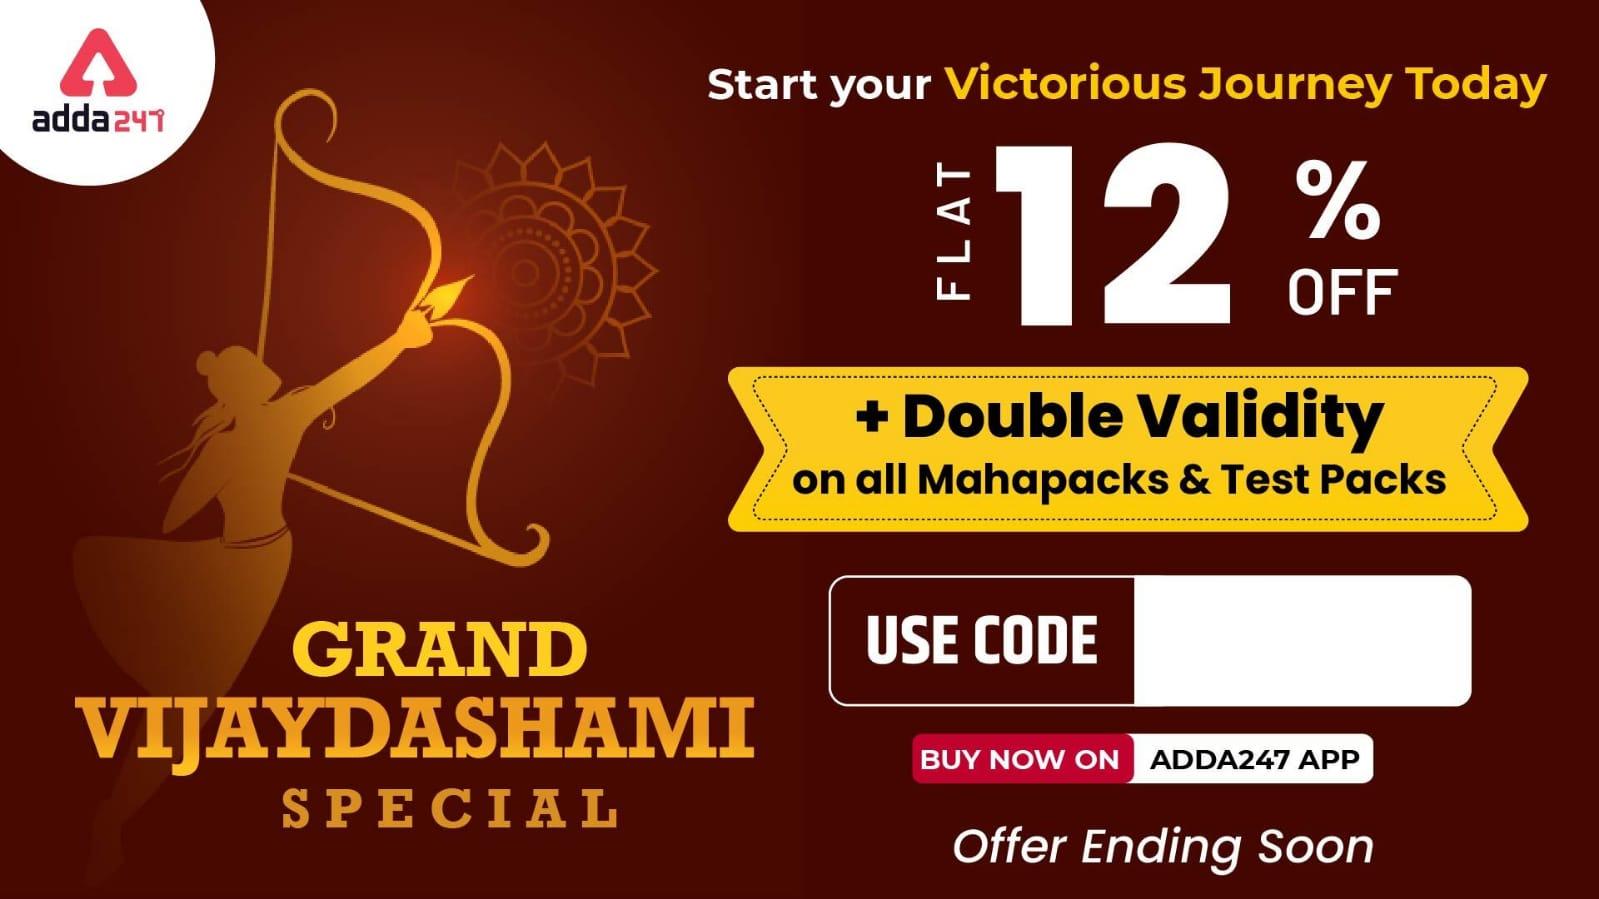 Grand Vijayadashami Special Offer